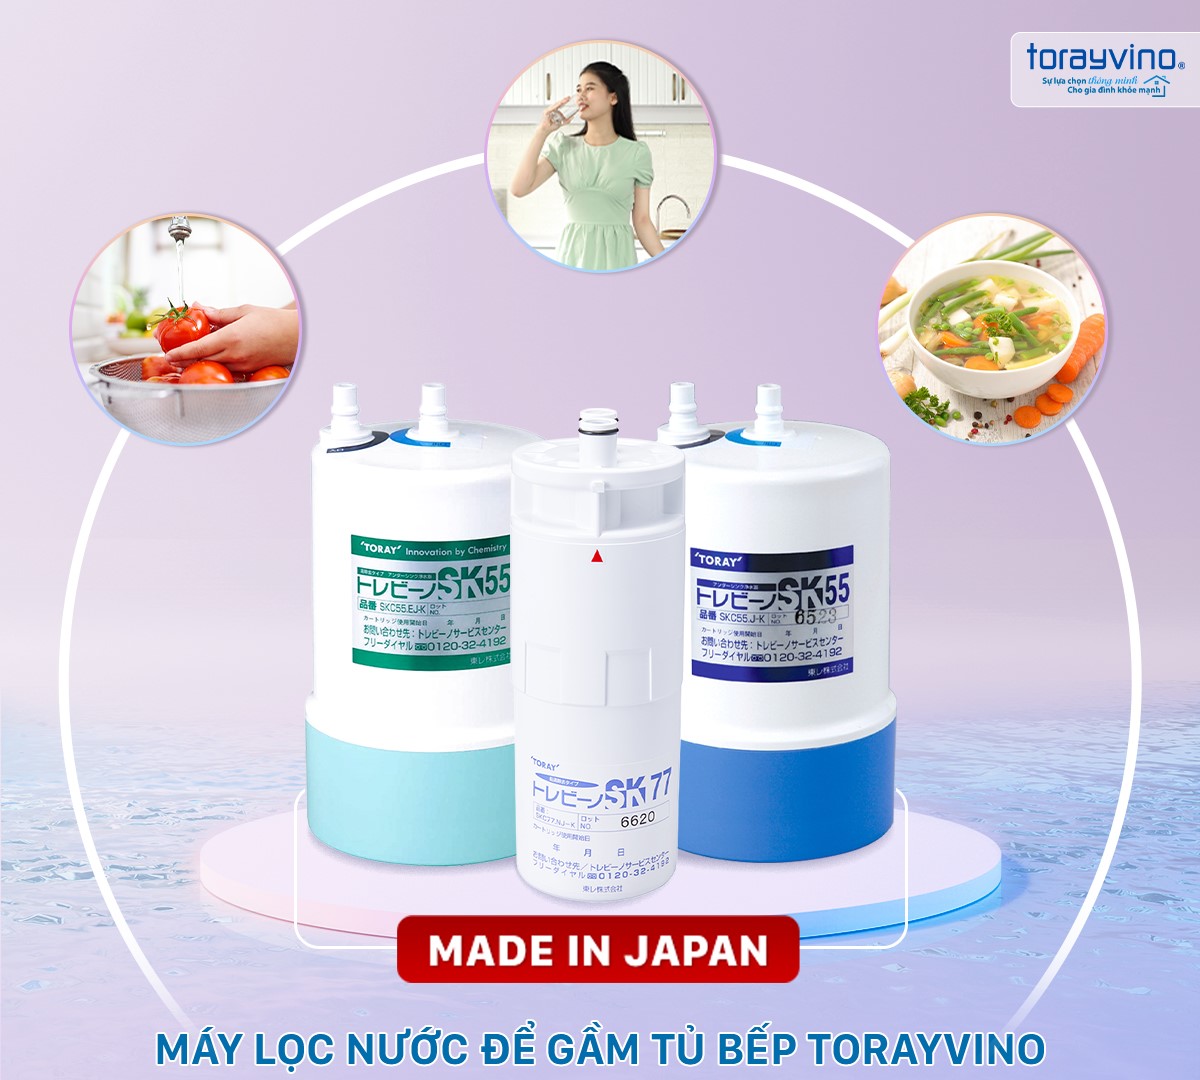 03 model máy lọc nước để gầm tủ bếp Torayvino Nhật Bản đáp ứng nhu cầu sử dụng nước sạch của người tiêu dùng Việt: uống trực tiếp, rửa thực phẩm, nấu ăn…